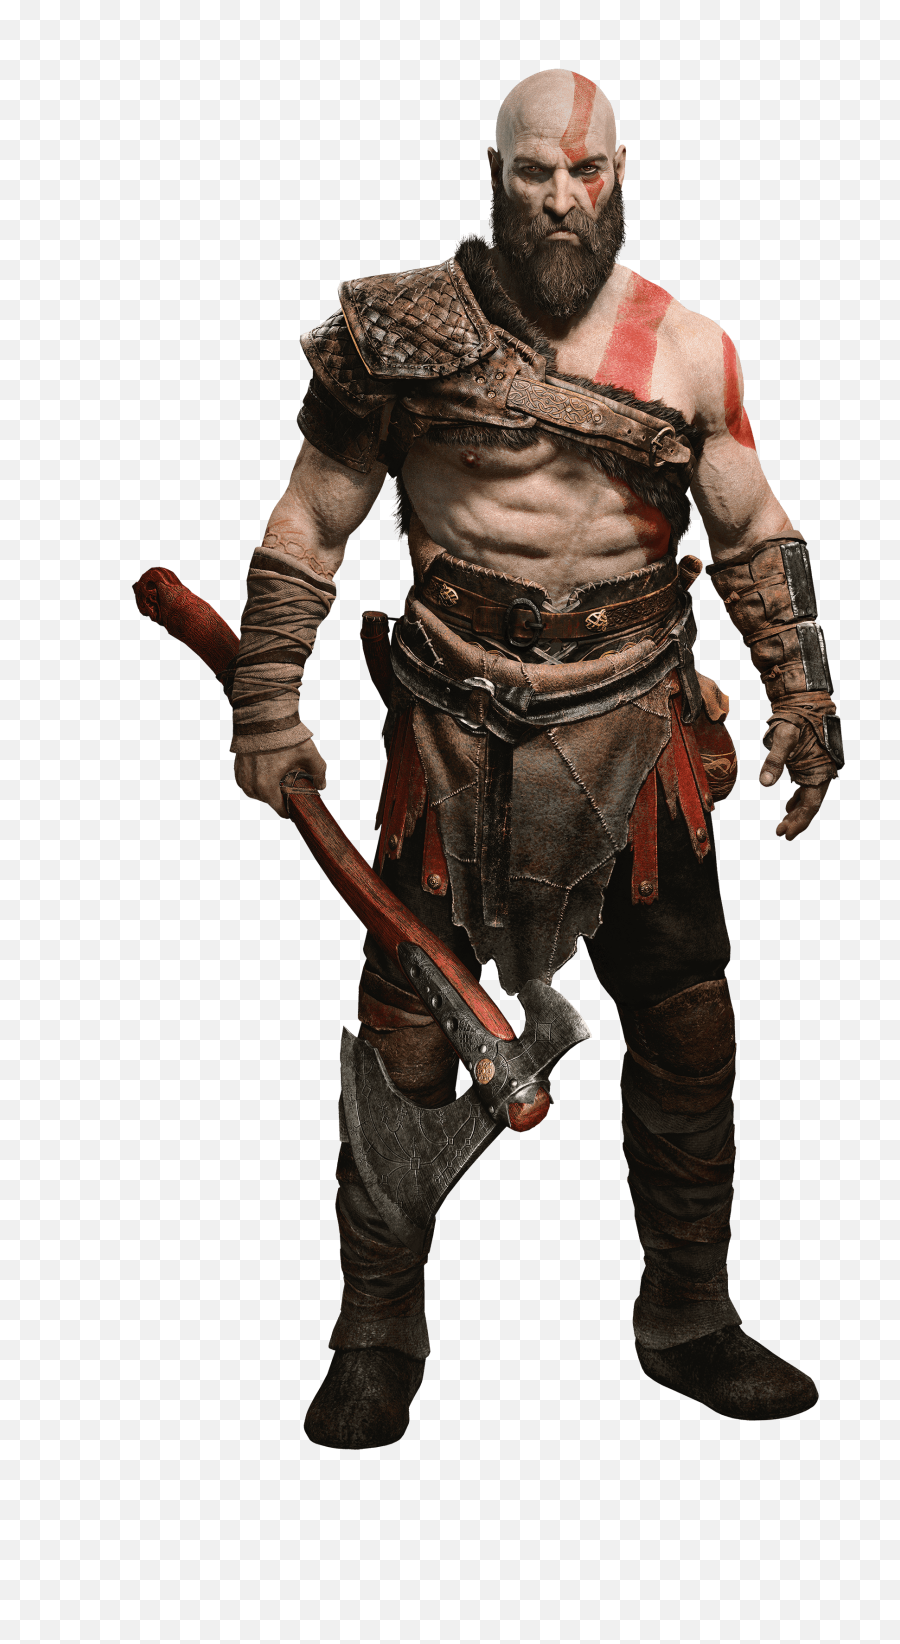 Kratos Transparent Image - Kratos God Of War 4 Png,War Png